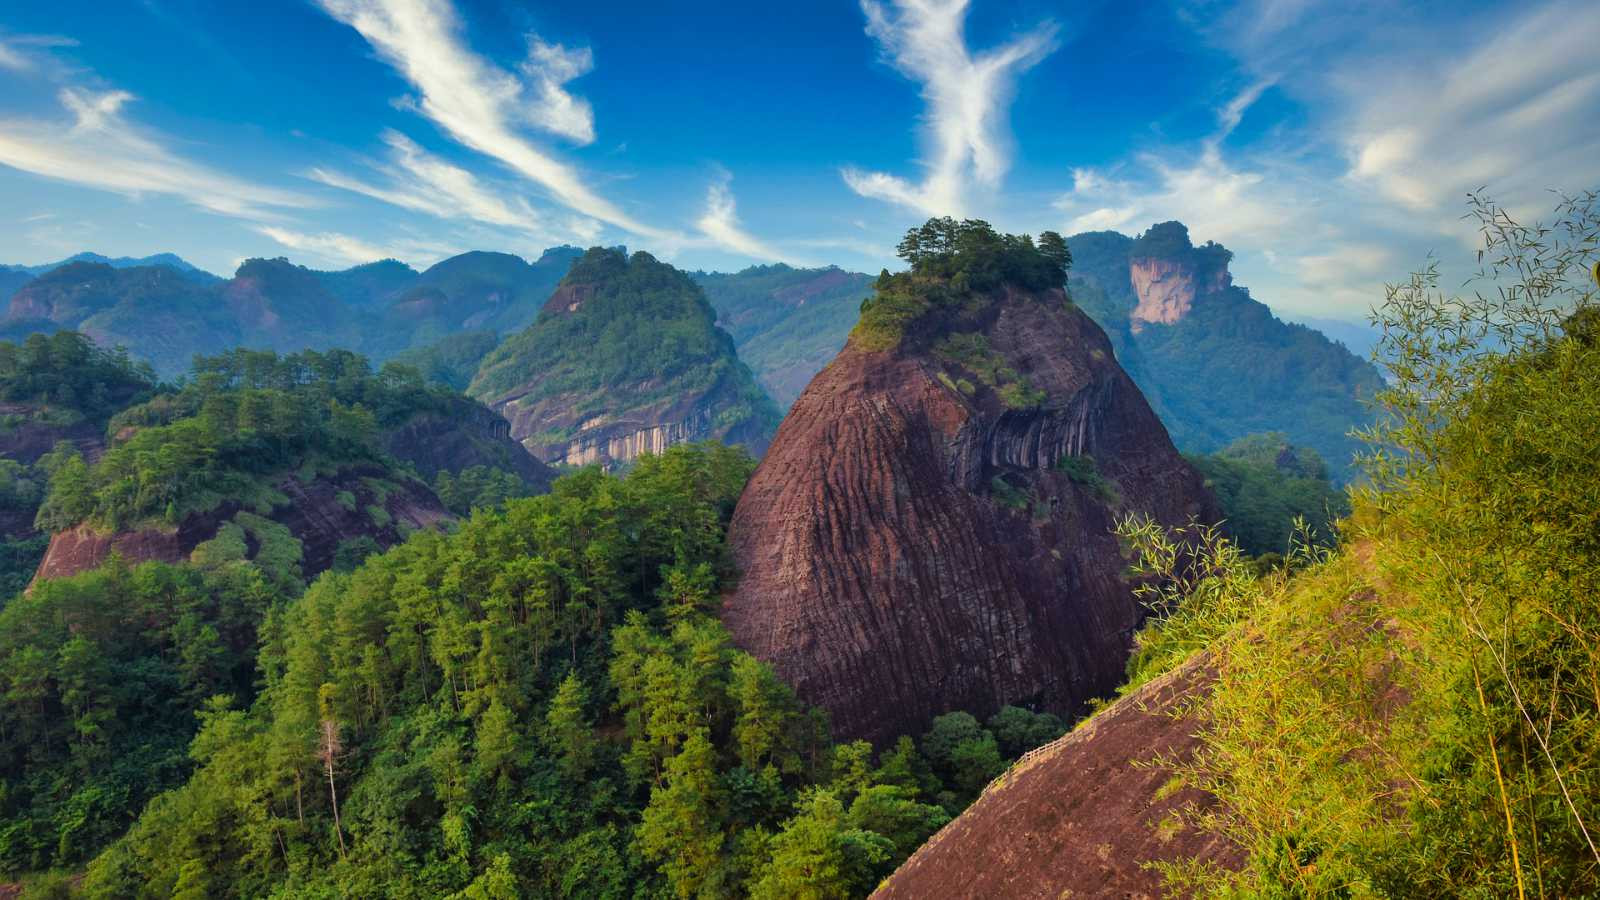 Cinque cose che dovete sapere sul Da Hong Pao e sui tè Oolong dei monti Wuyi